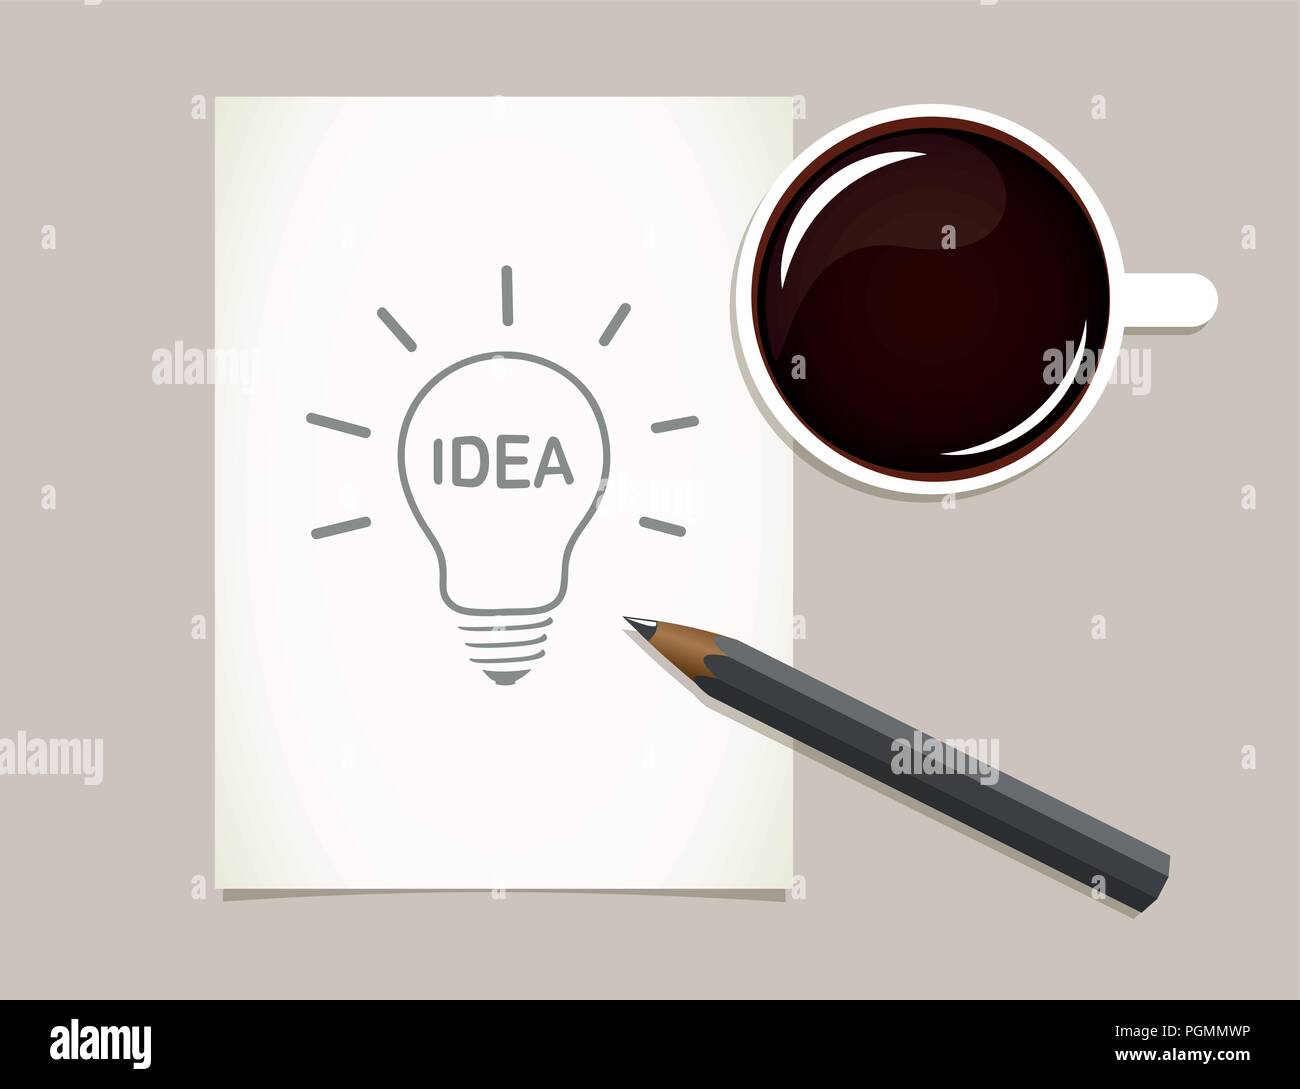 Kaffee und Glühbirne Idee zeichnung Vektor-illustration EPS 10. Stock Vektor